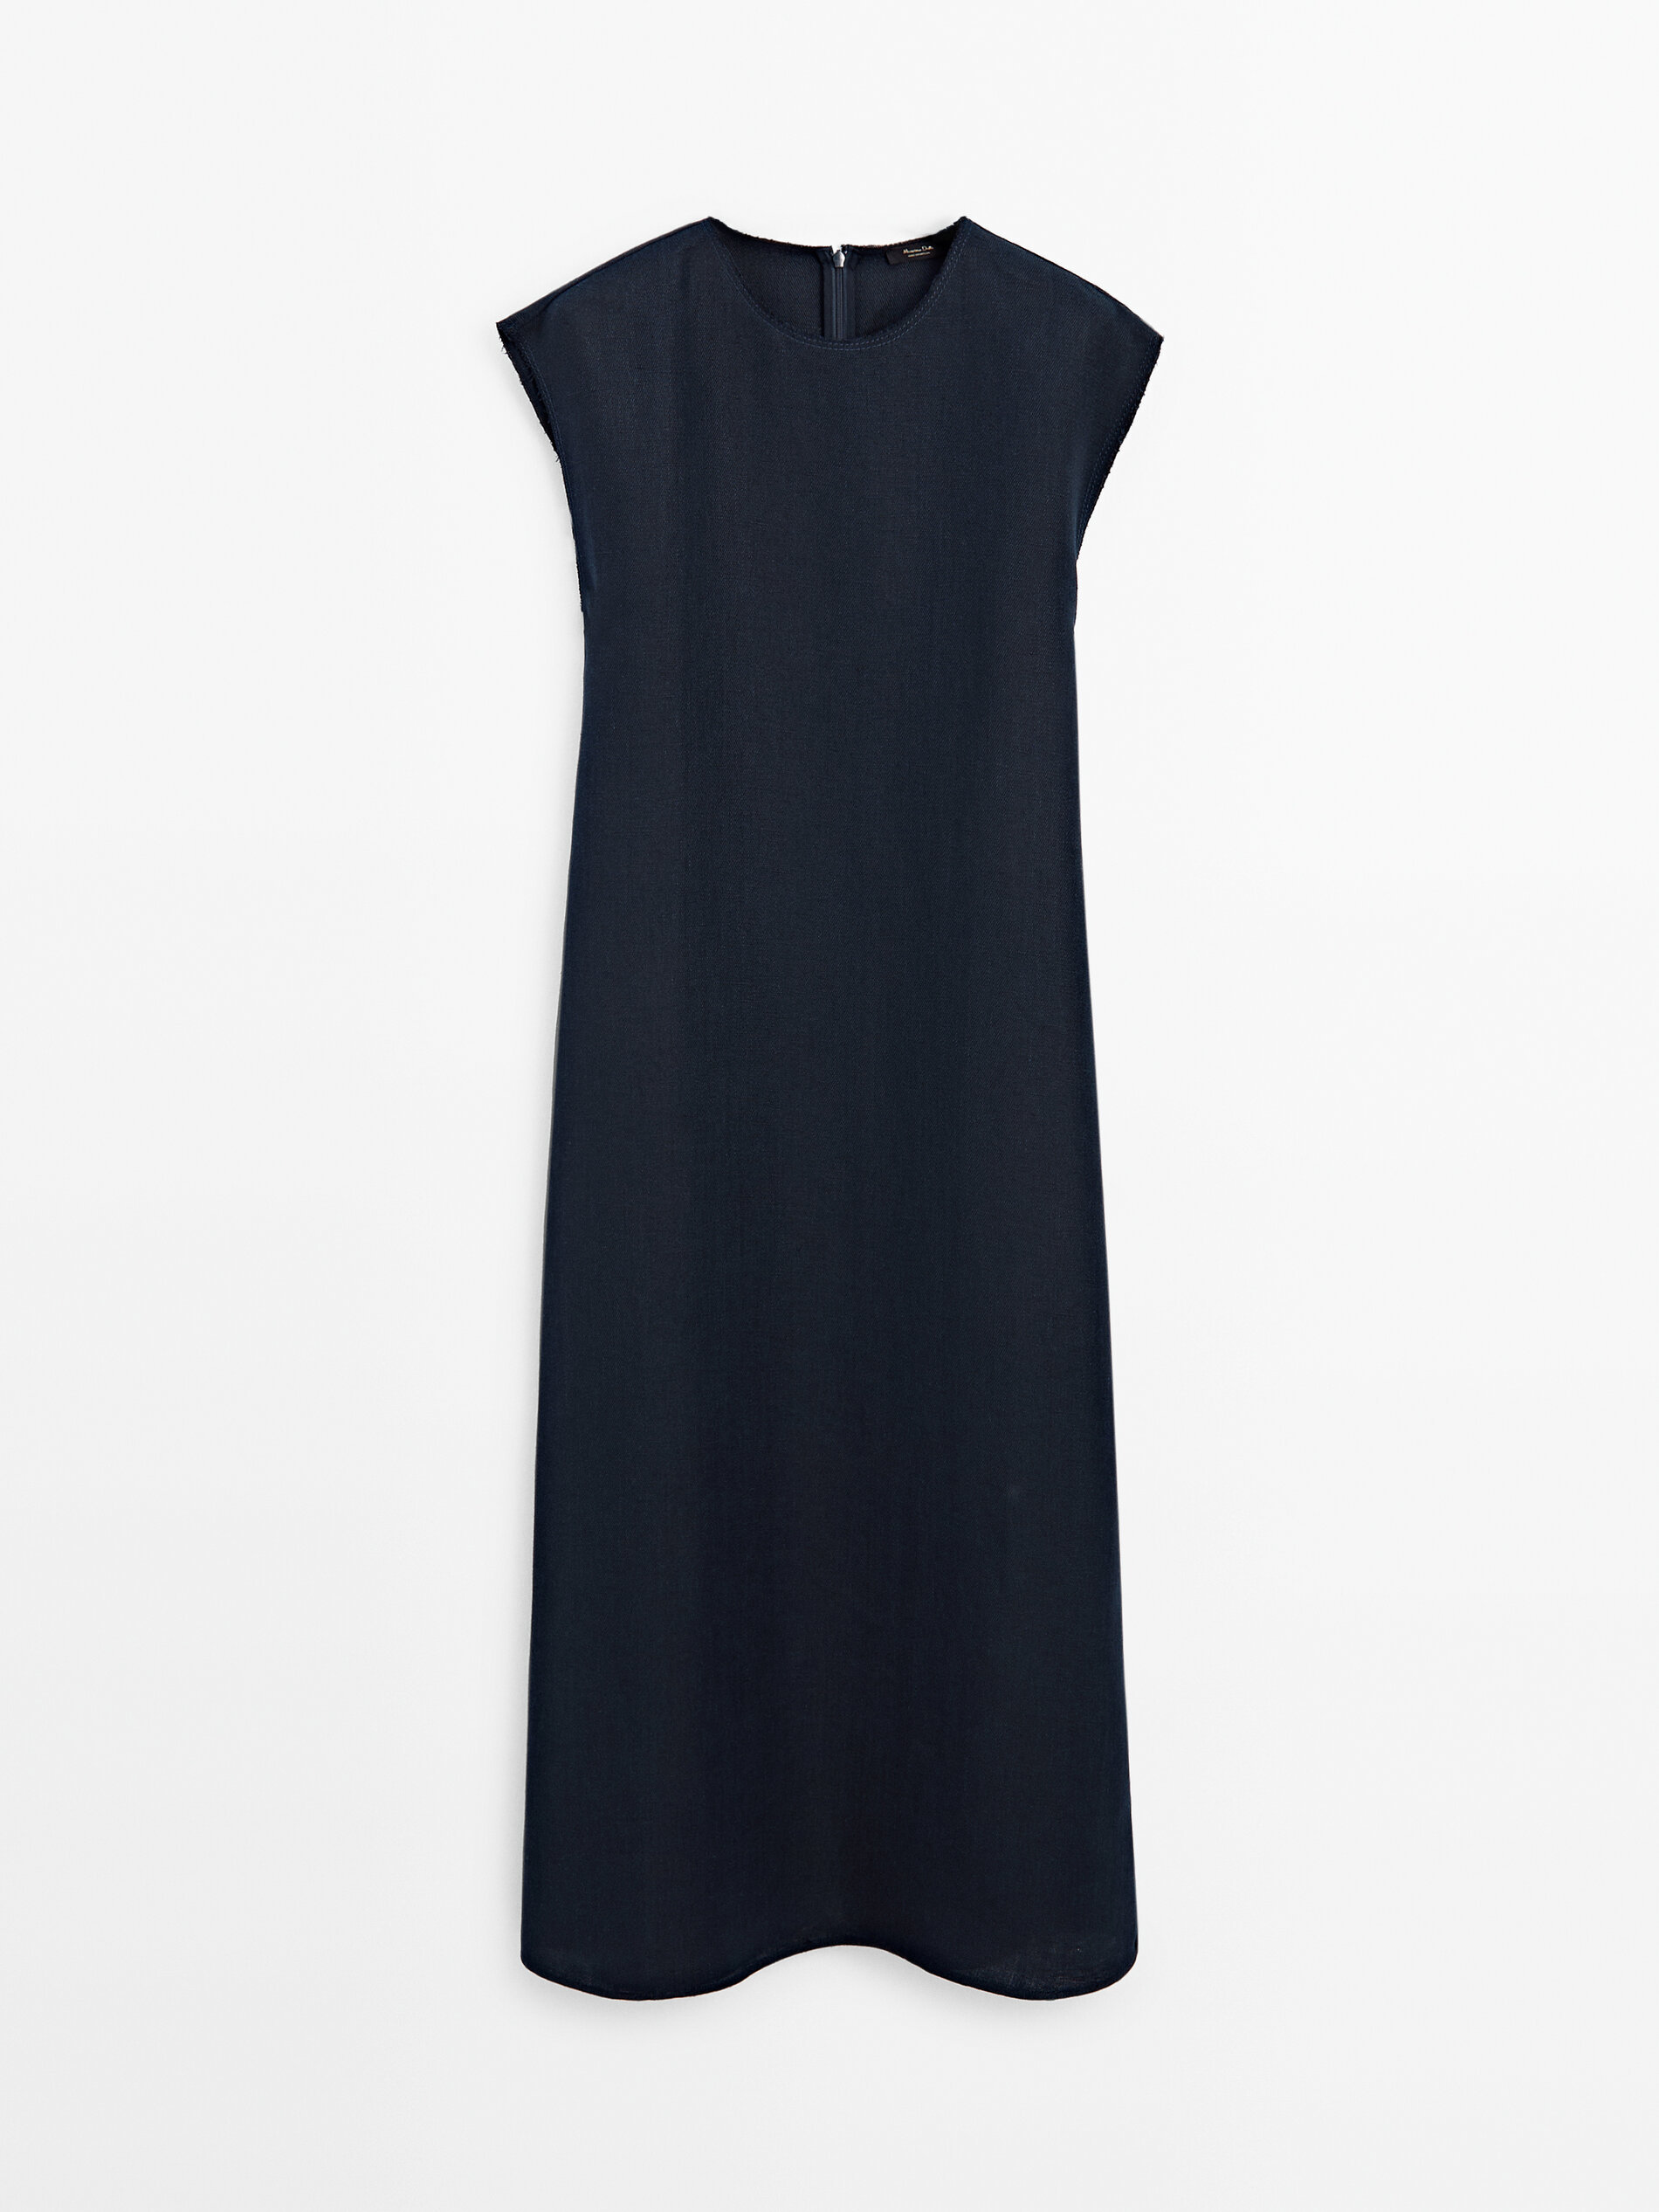 Renueva tu armario con el vestido midi efecto denim de Massimo Dutti que te har sentir fabulosa a los 60 aos